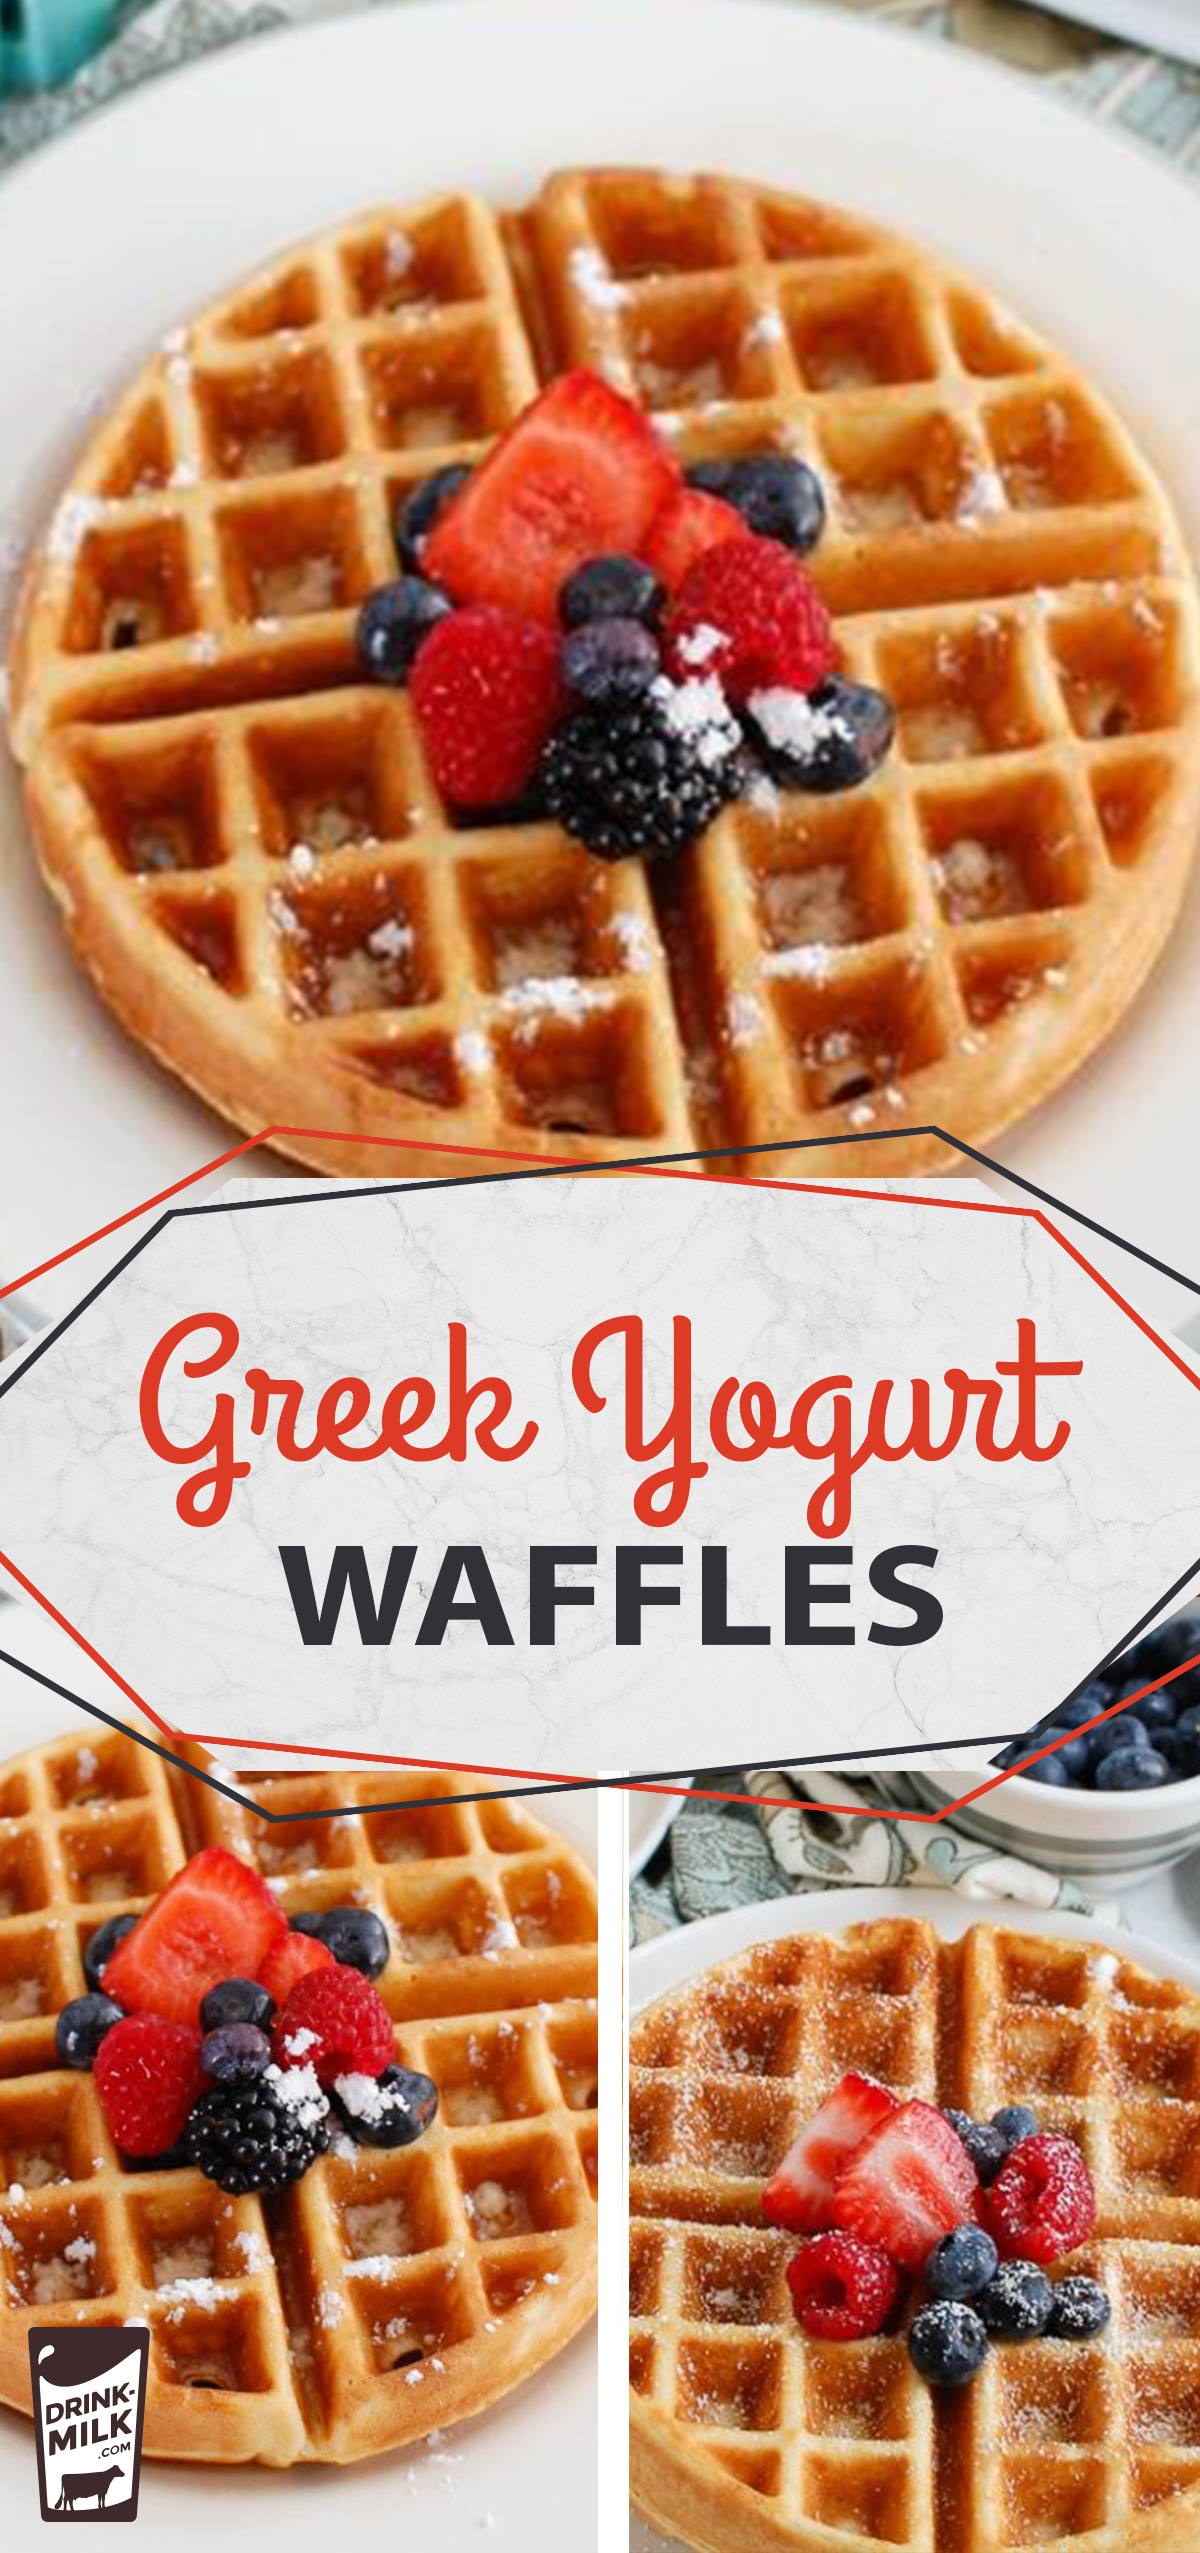 14 healthy recipes Protein greek yogurt ideas